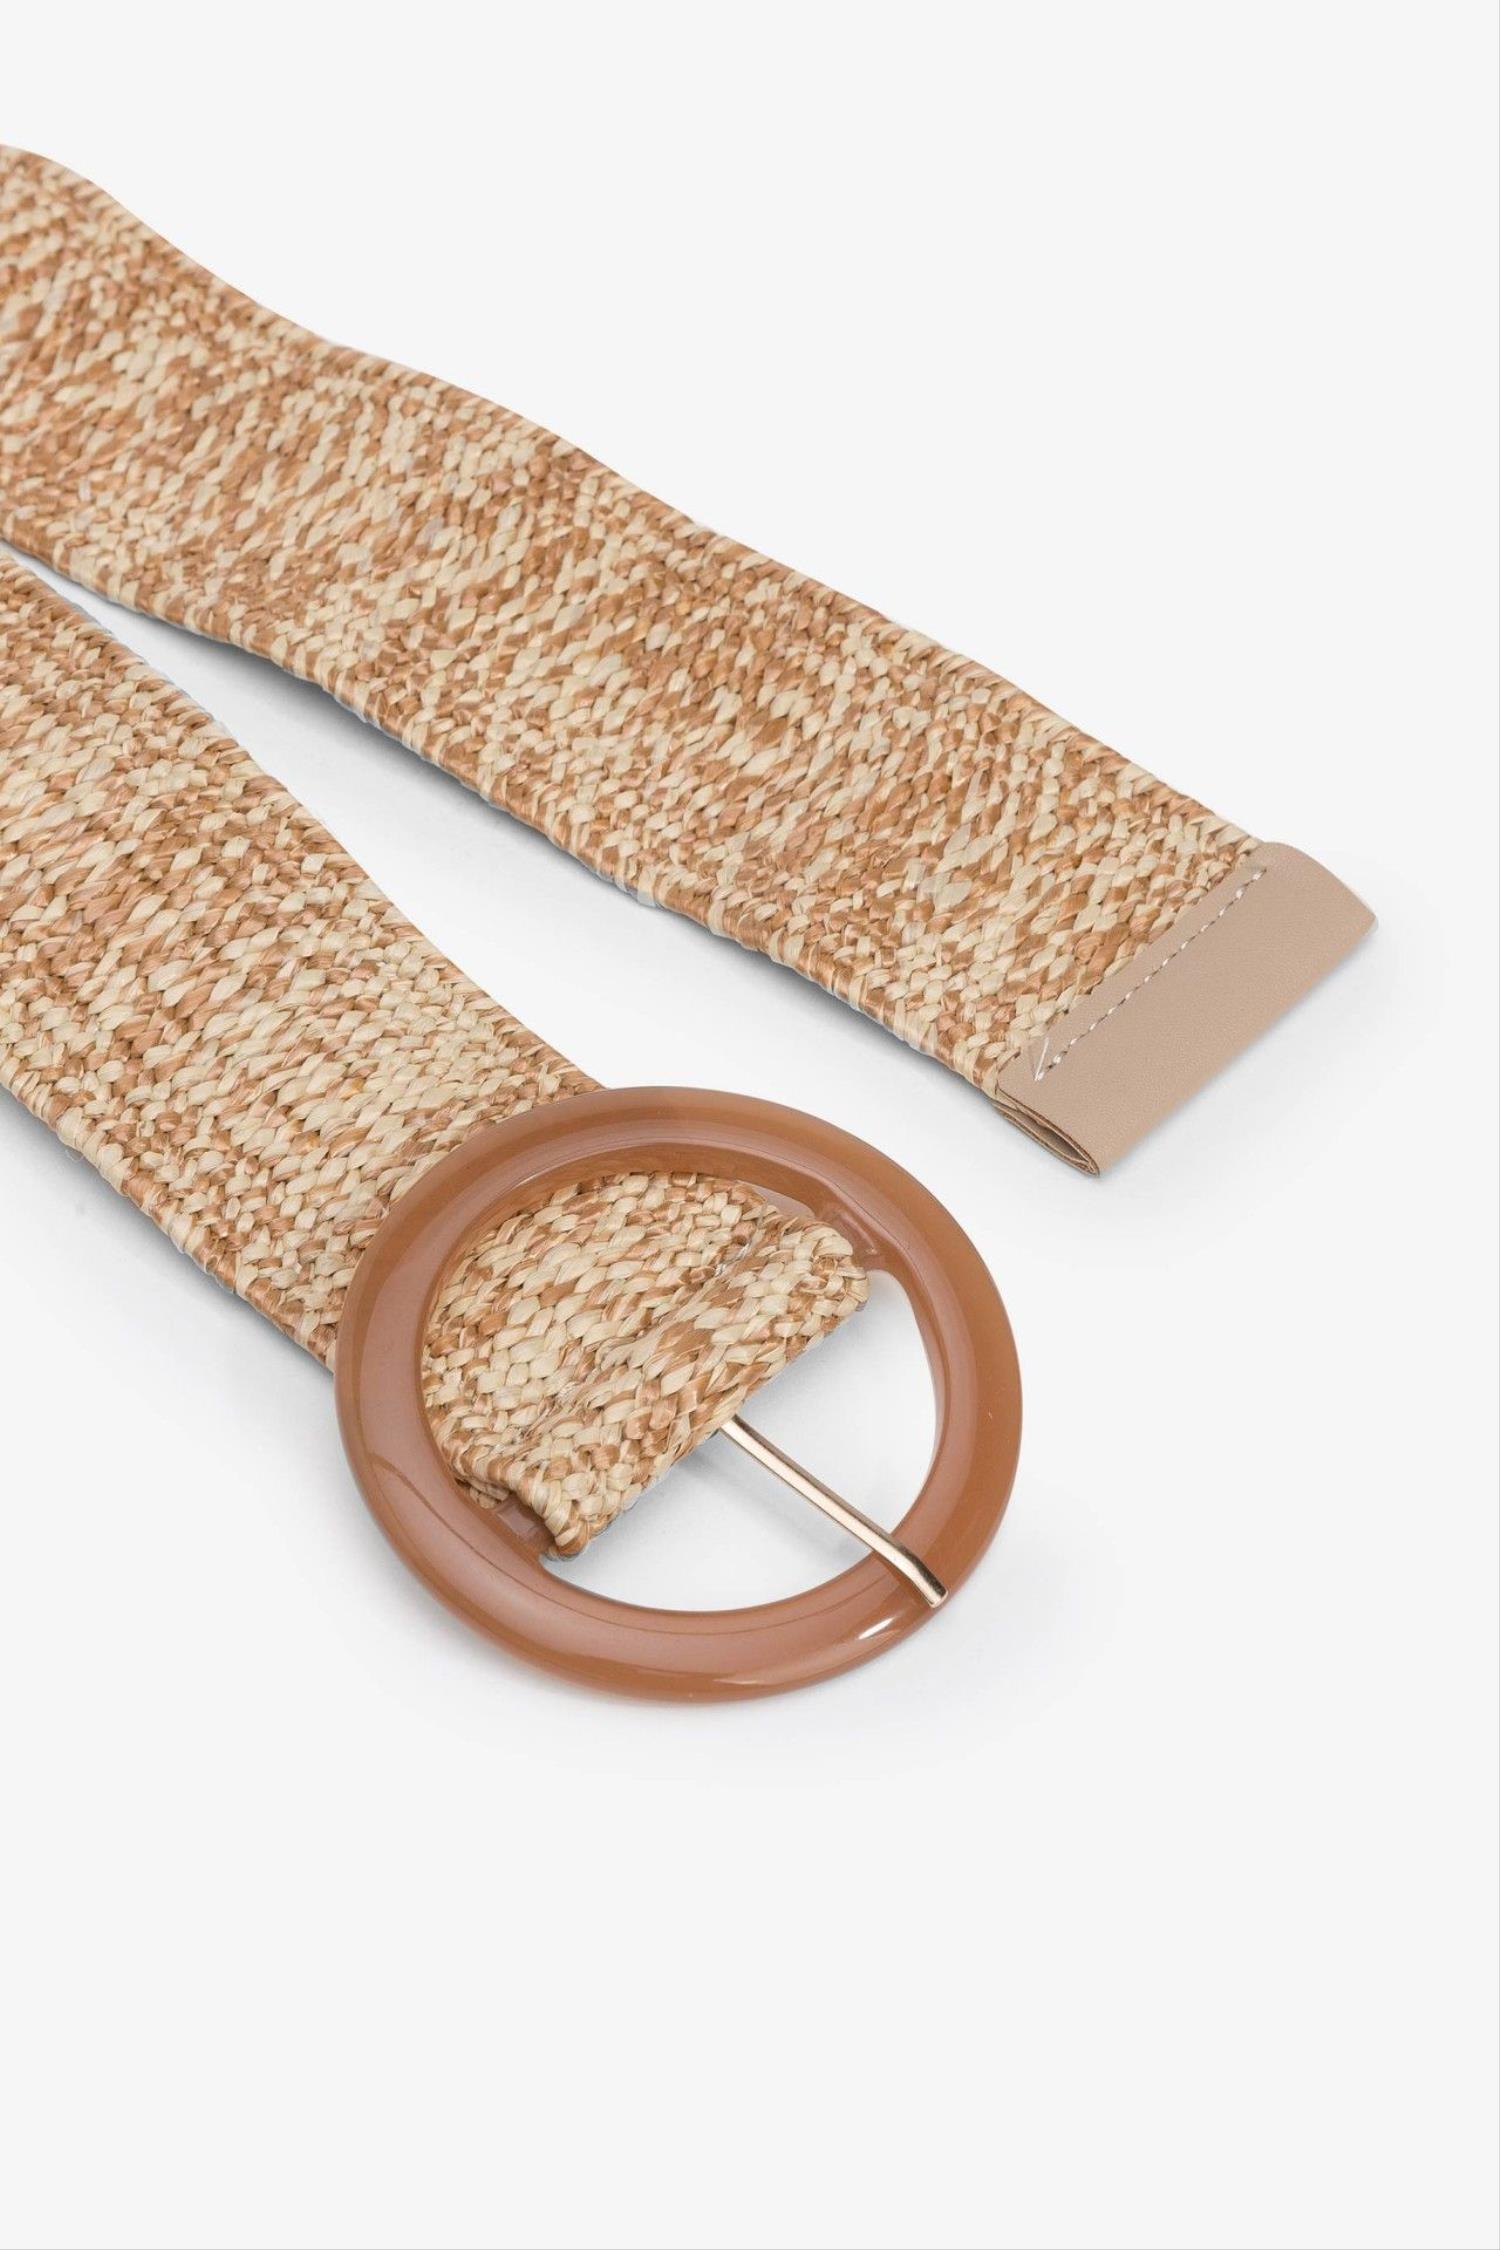 Cinturón elástico en color marrón de la marca Vilanova con referencia 71007801_150.